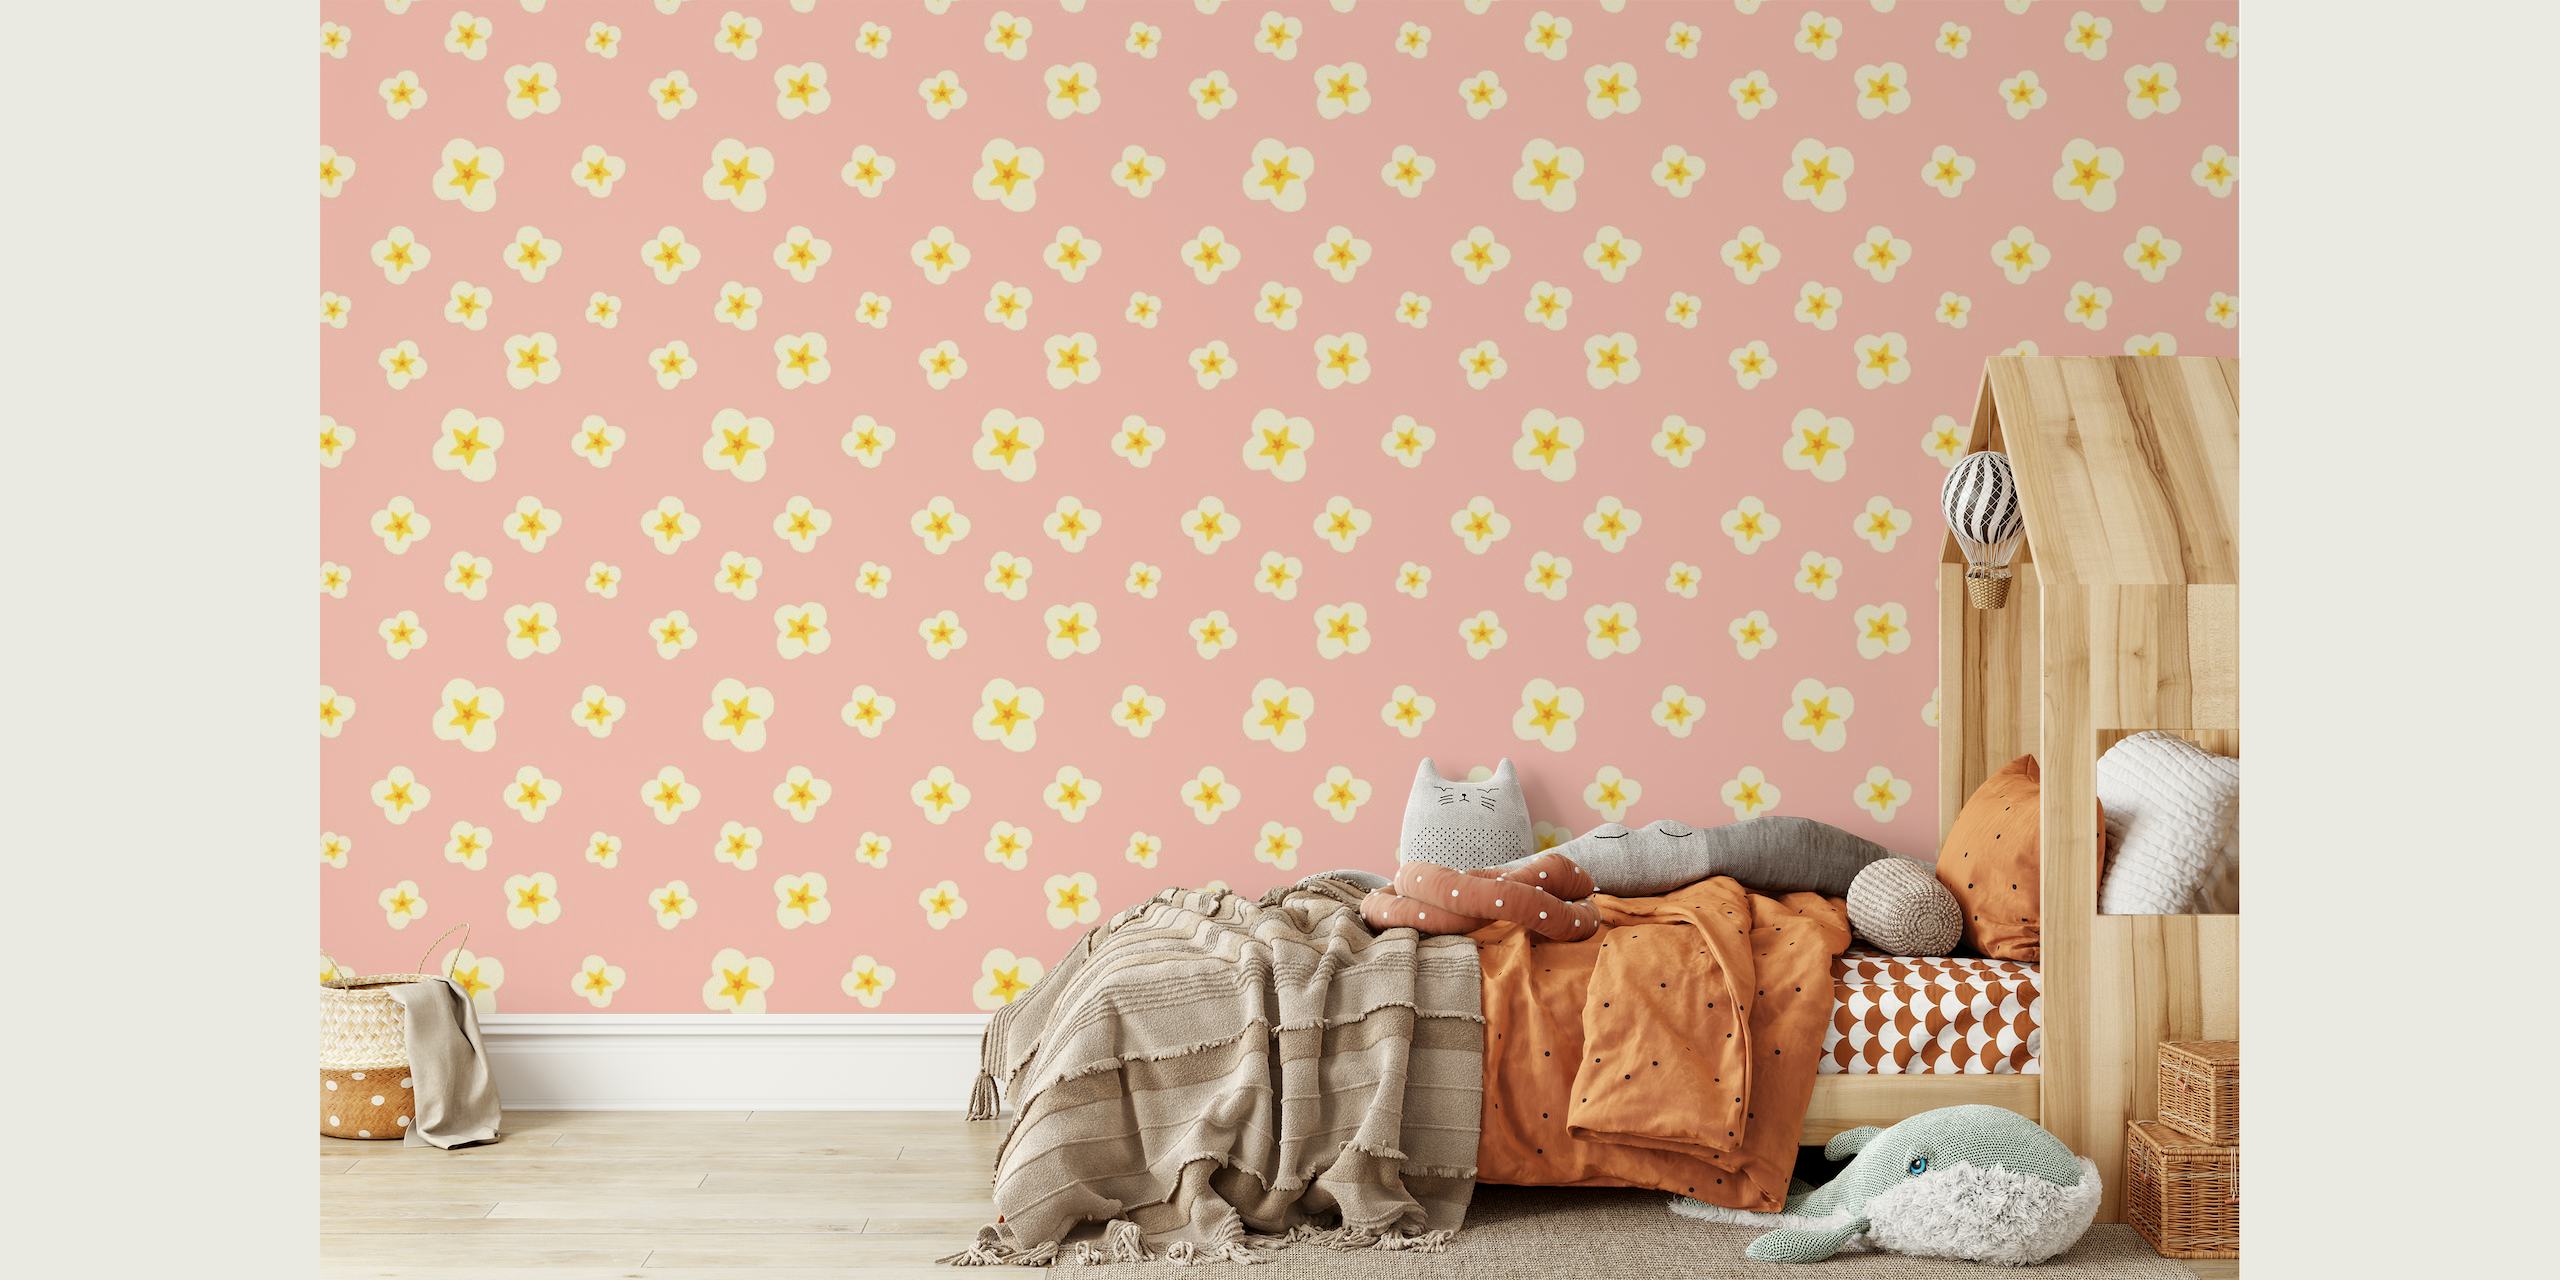 Pastelově růžová fototapeta se vzorem narcisů pro domácí dekoraci